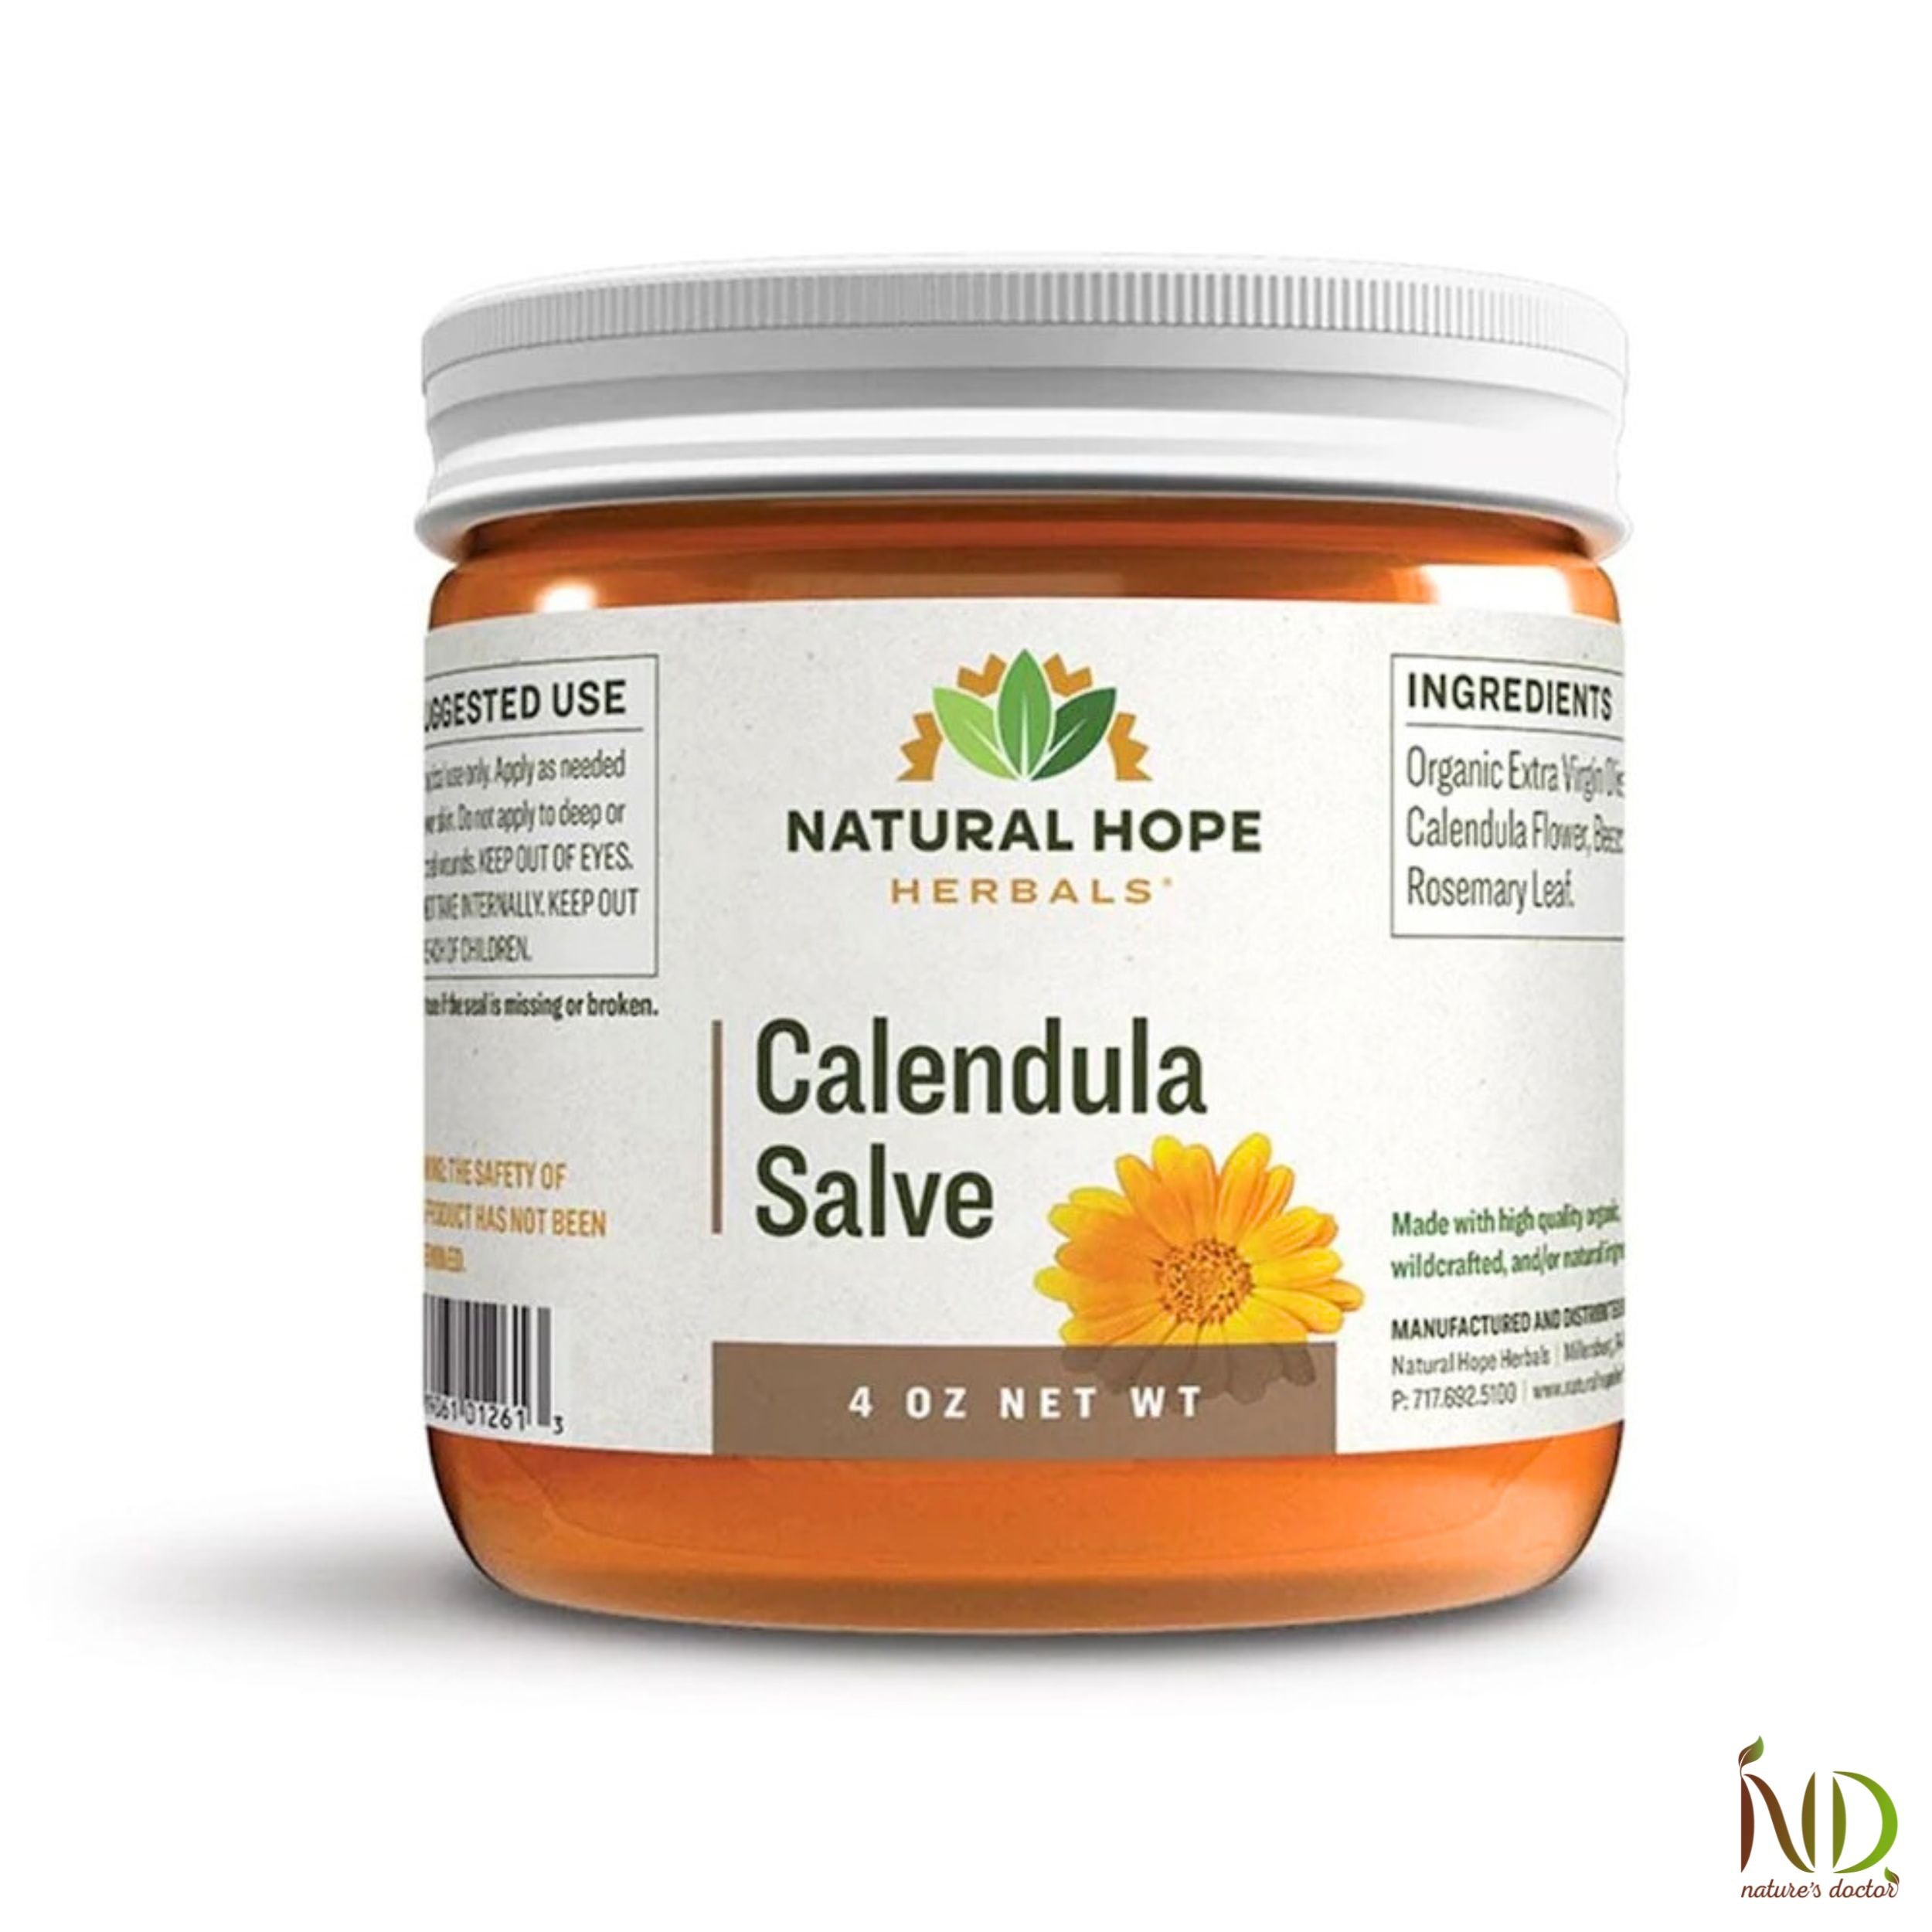 Calendula Salve - Natural Hope Herbals